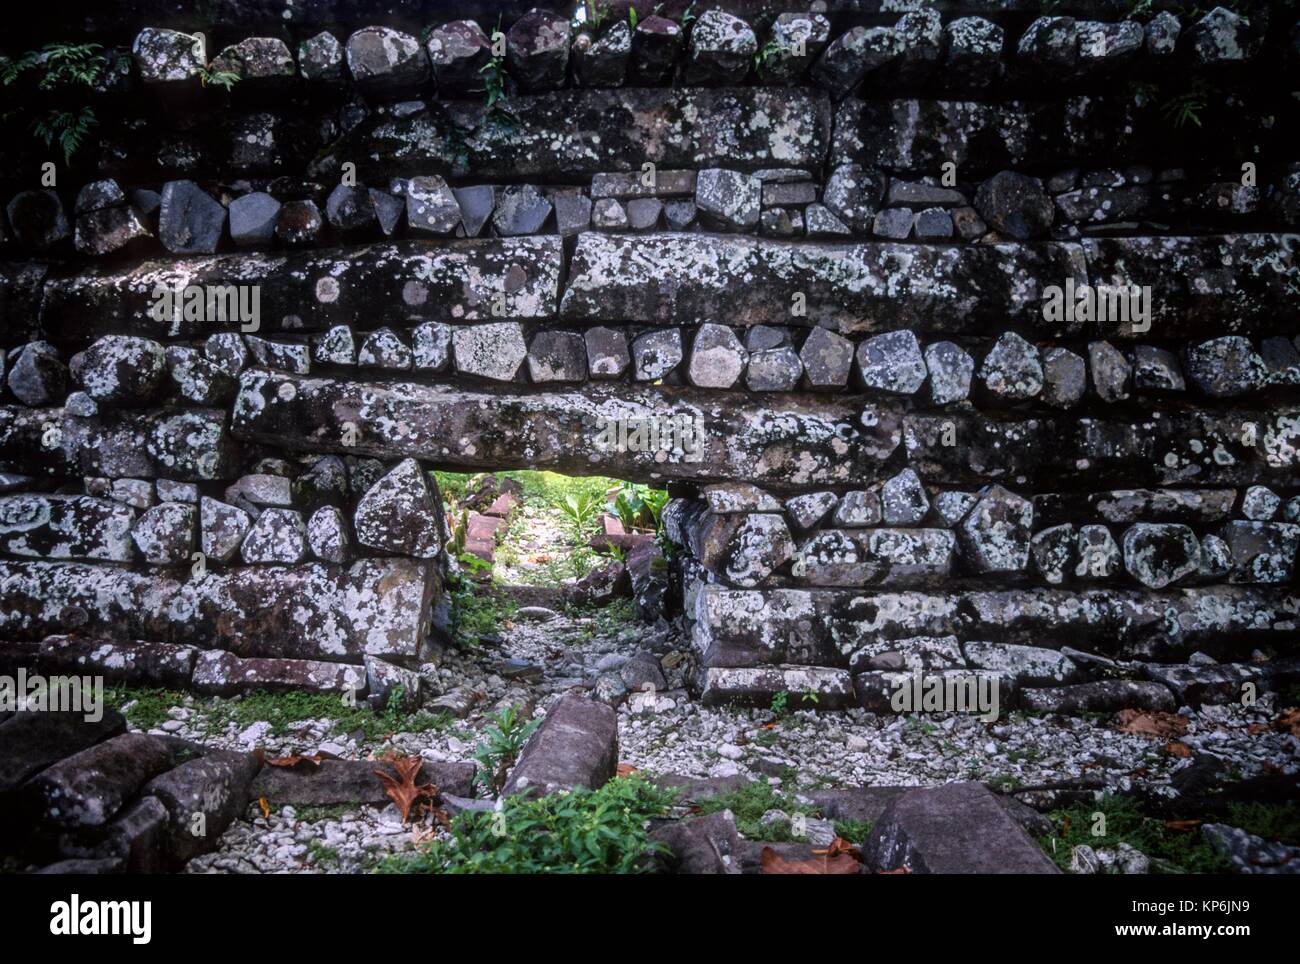 Ruinas de Nan Madol, centro ceremonial de Micronesia Oriental, Sitio del Patrimonio Mundial de la UNESCO, la Isla Temwen, Pohnpei, Estados Federados de Micronesia. Foto de stock